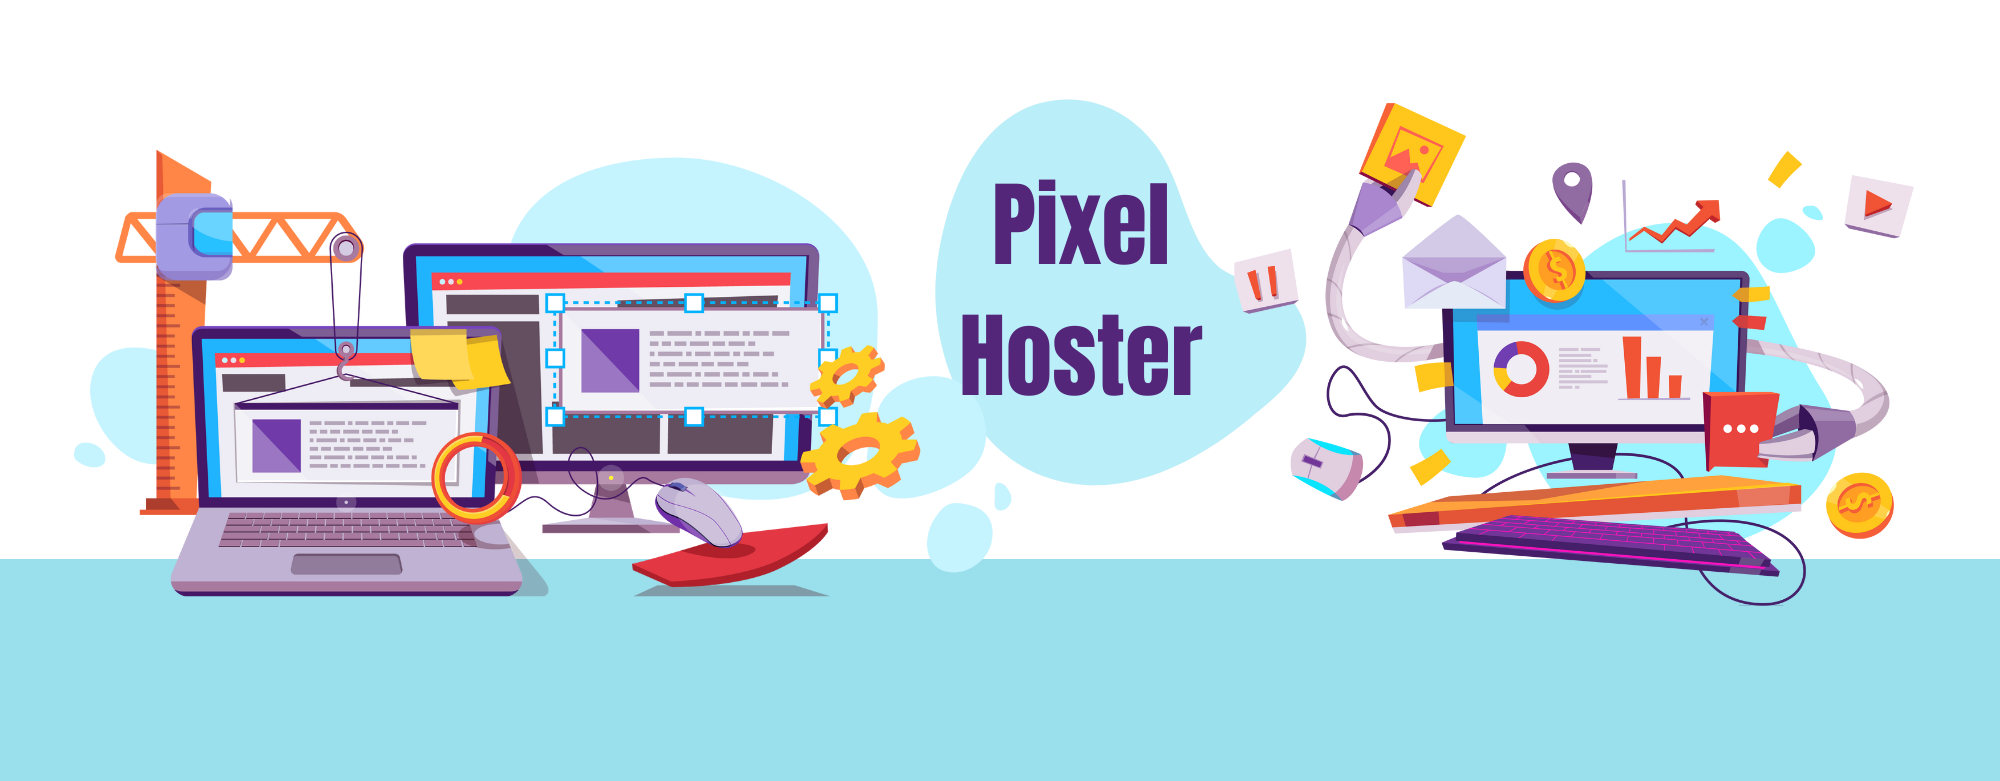 Pixel Hoster